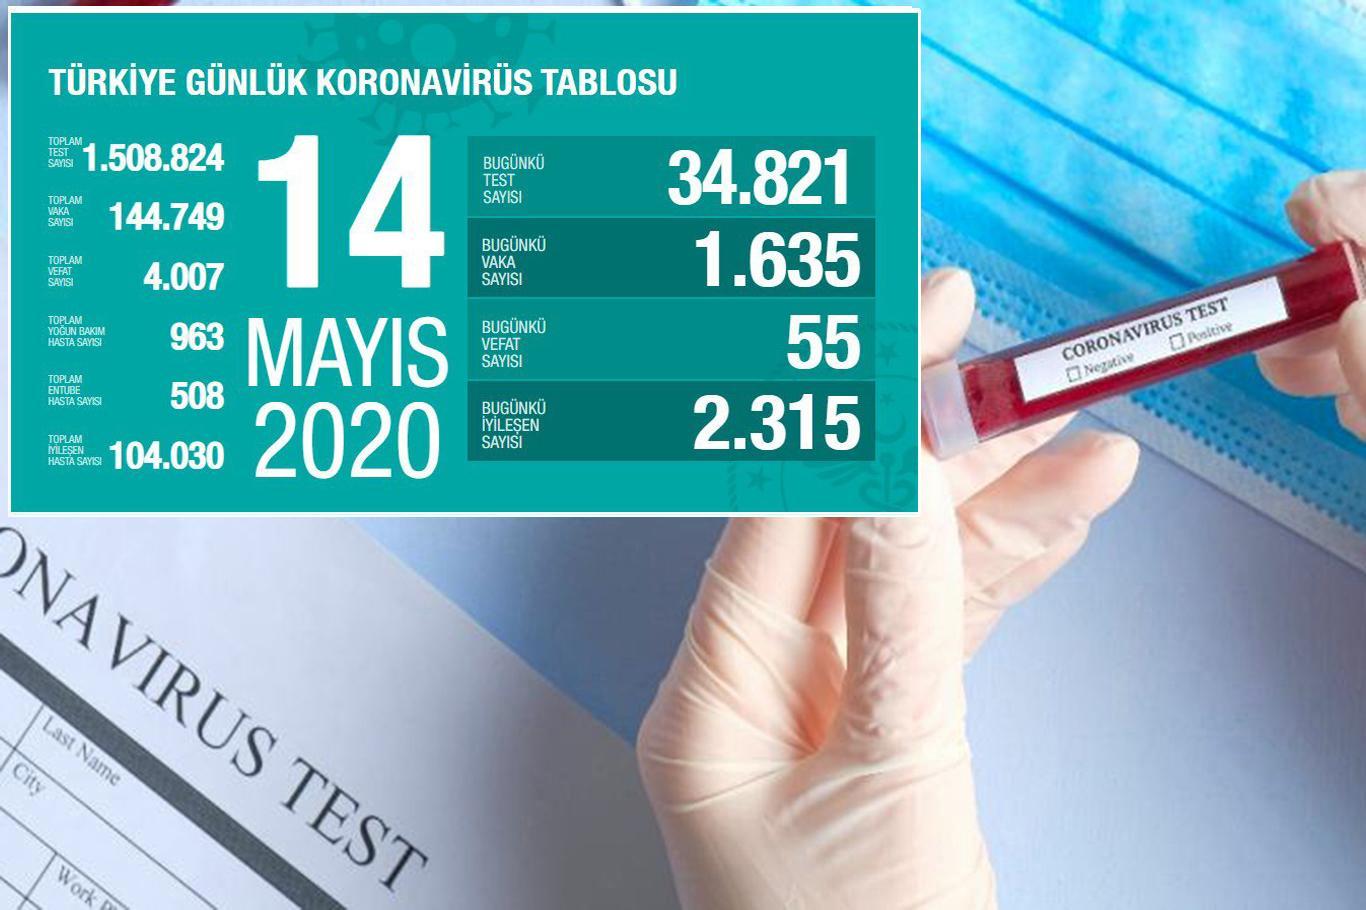 Turkey’s death toll from coronavirus surpasses 4,000